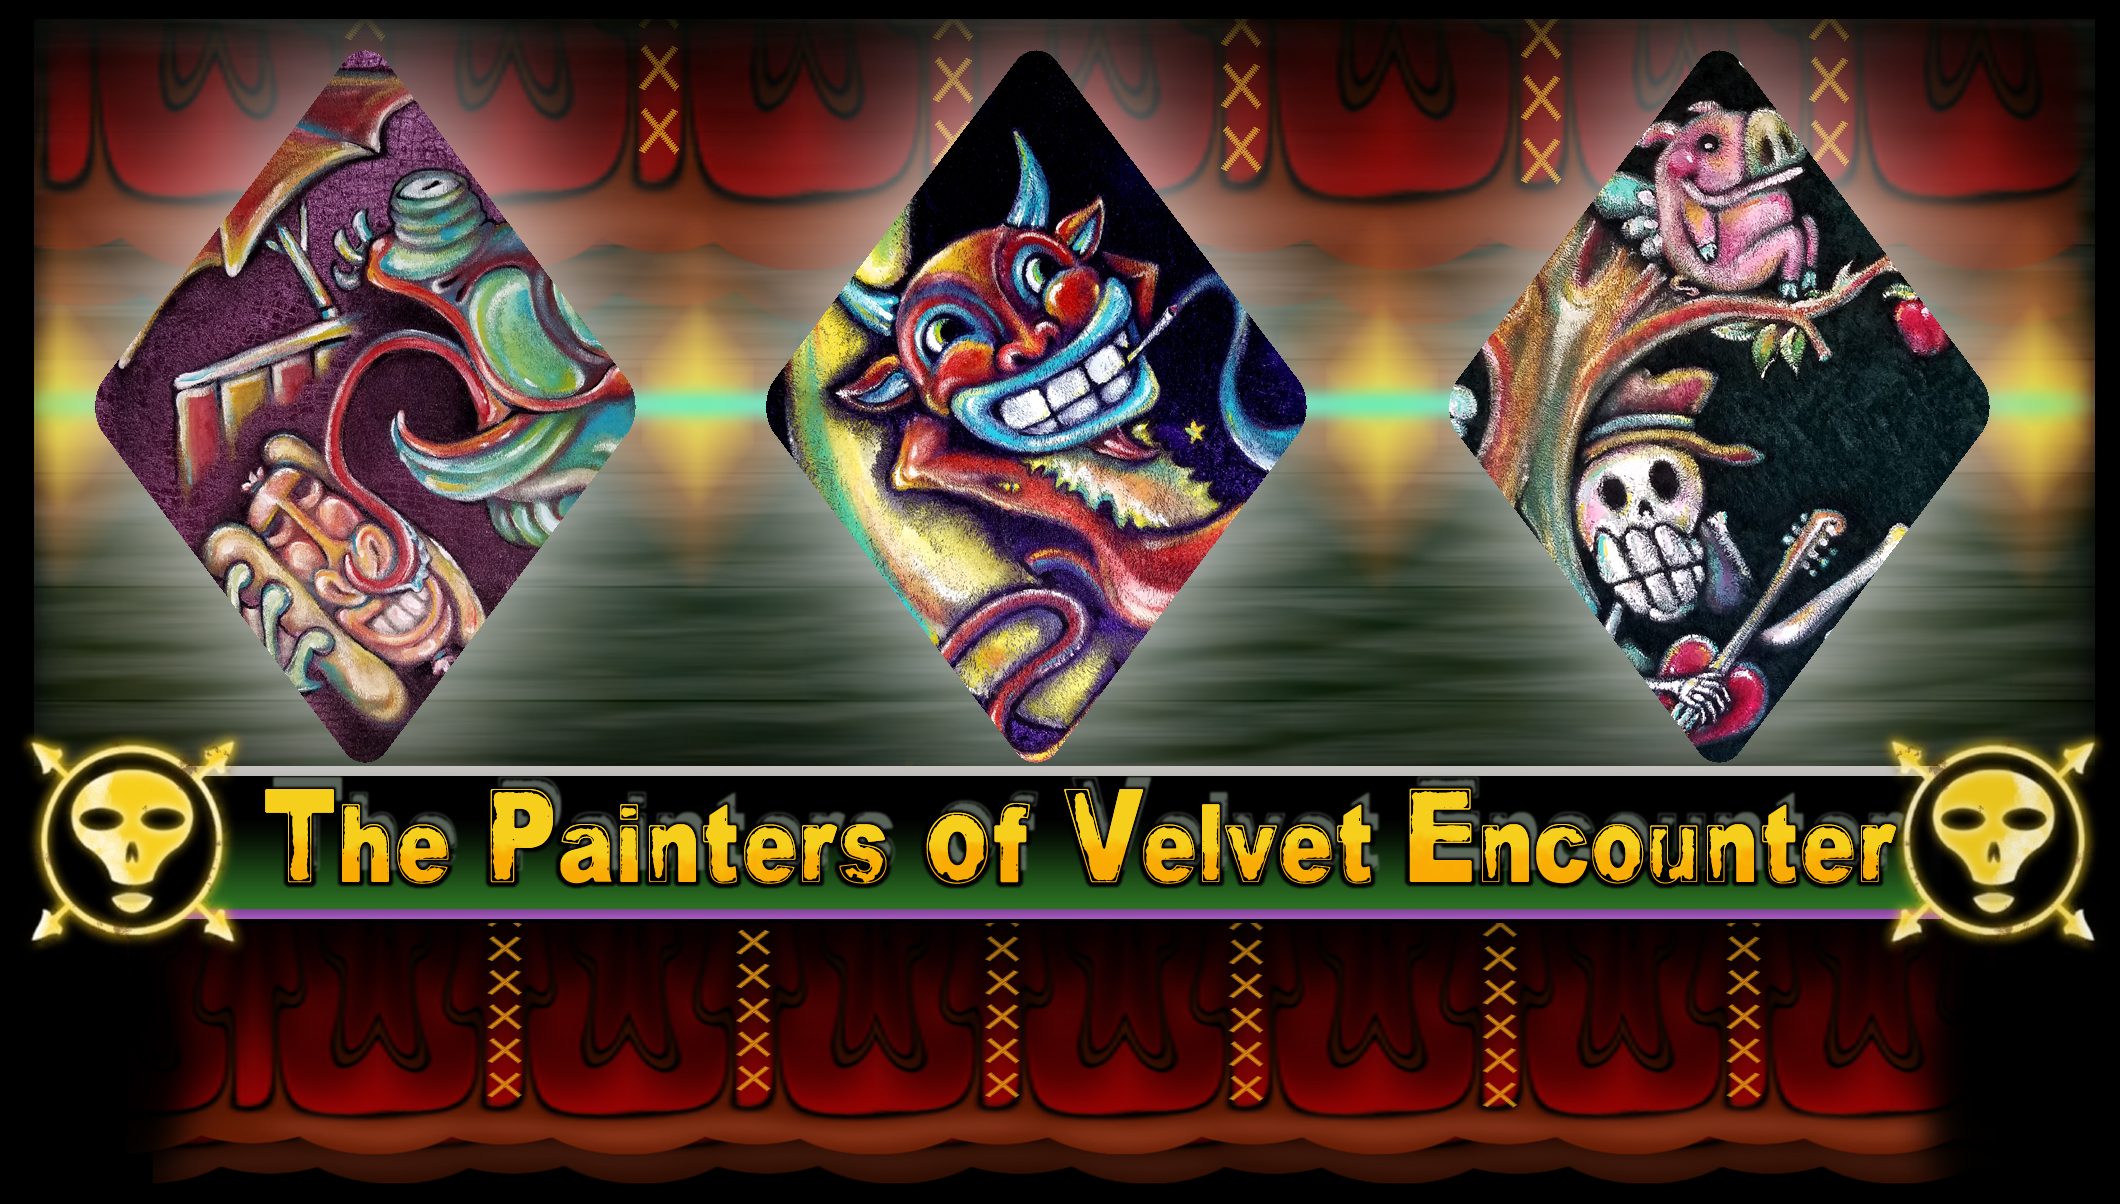 The Painters of Velvet